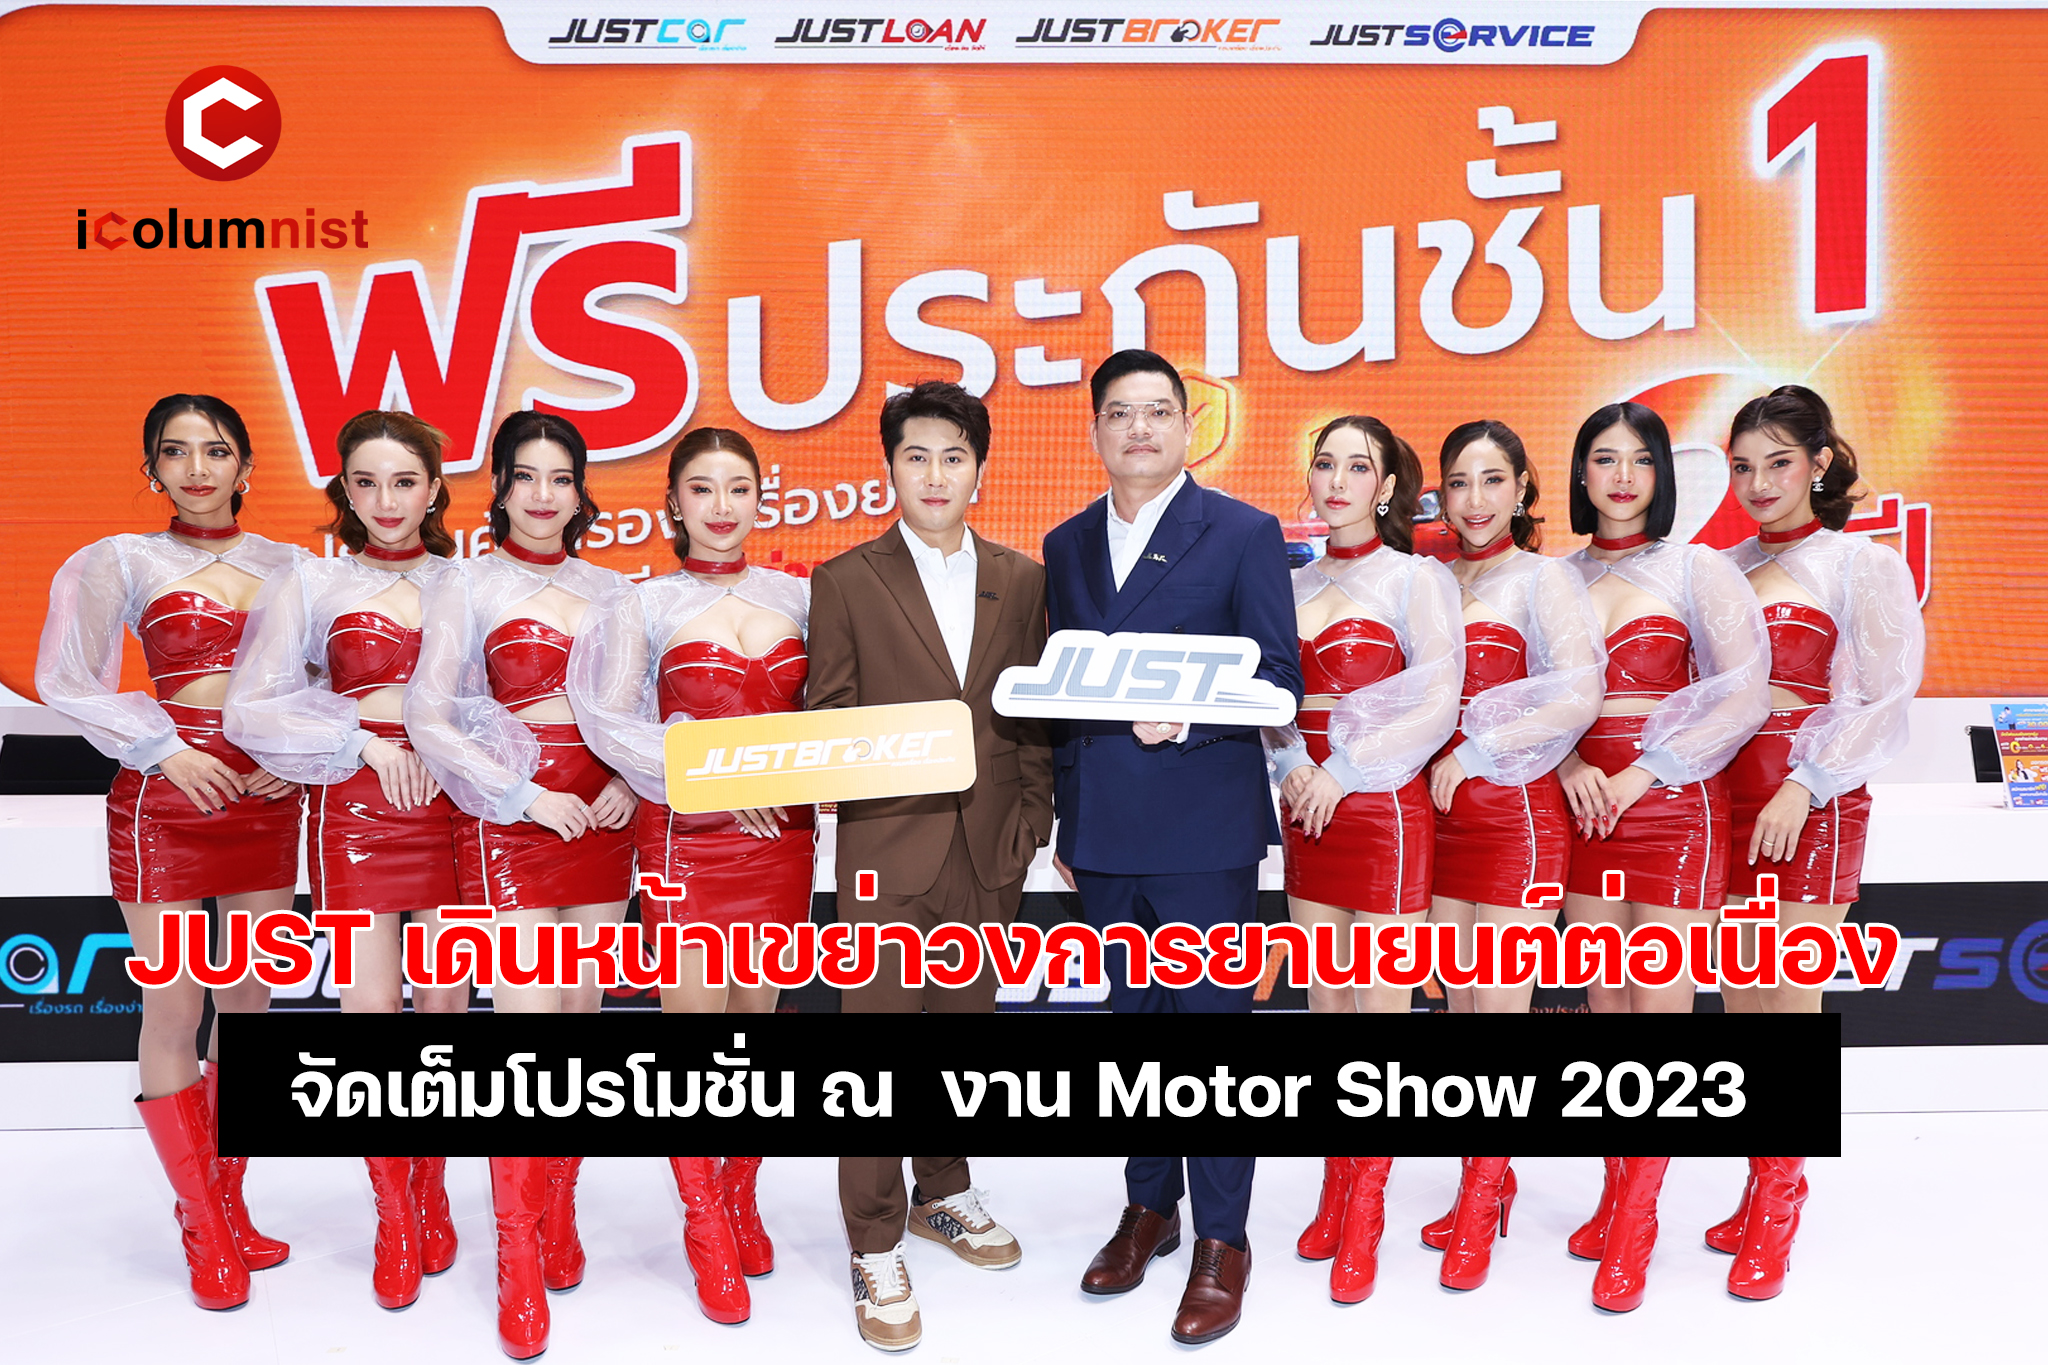  ข่าวดี! สำหรับคนอยากออกรถใหม่ ในงาน “Bangkok International Motor Show 2023” ดาวน์ 0 บาท ผ่อน 0% นาน 6 เดือน แถมฟรีประกันอีกเพียบ จัดหมดทุกค่าย ทุกรุ่น ทุกราคา ที่บูธ JUST (C16)